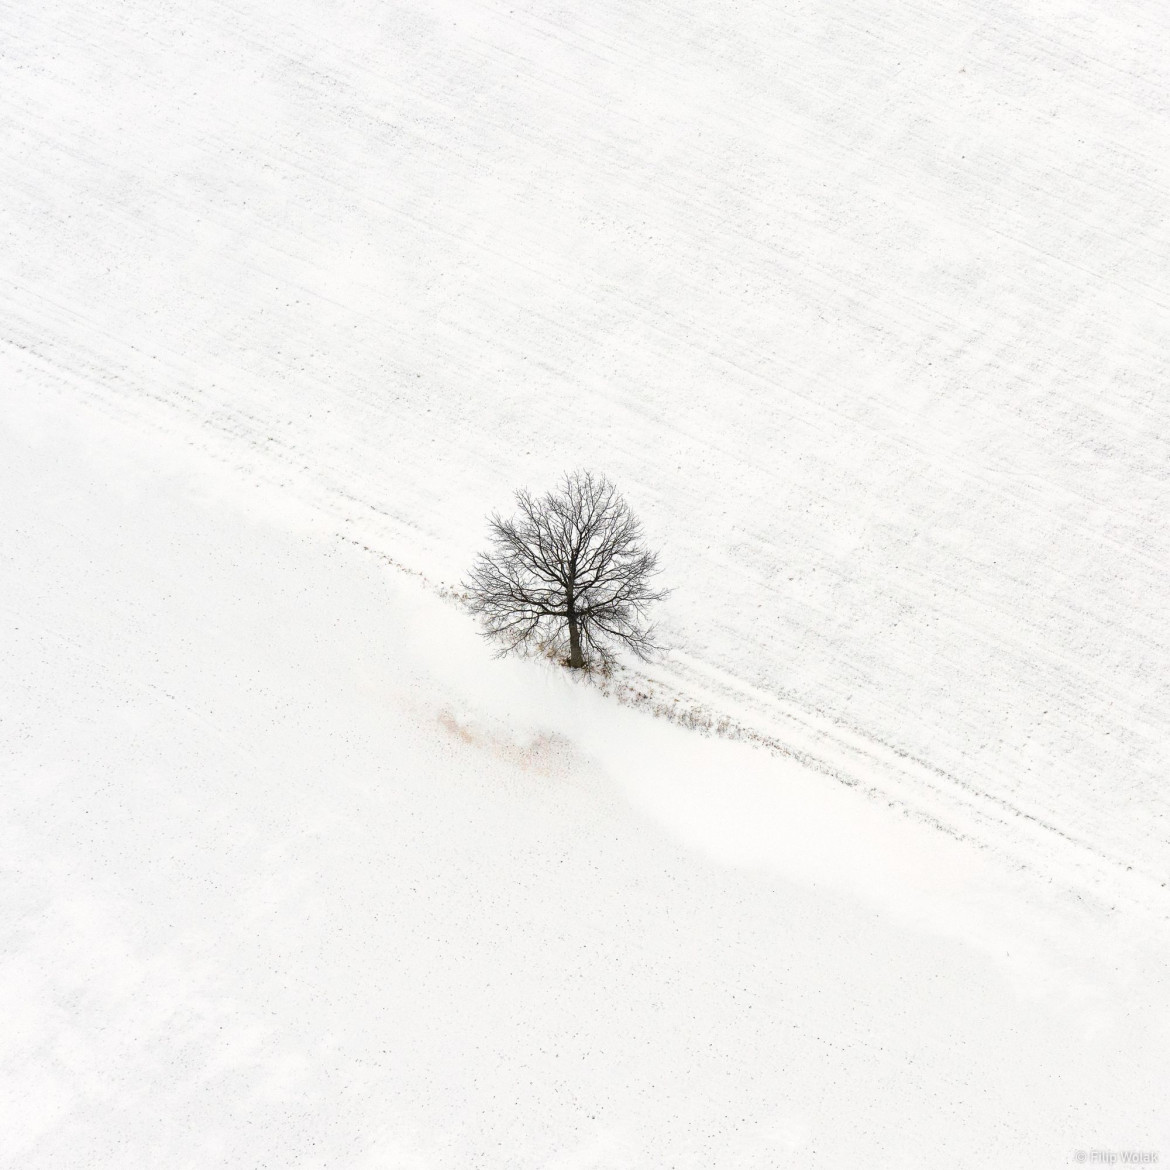 fot. Filip Wolak "Lone Tree"